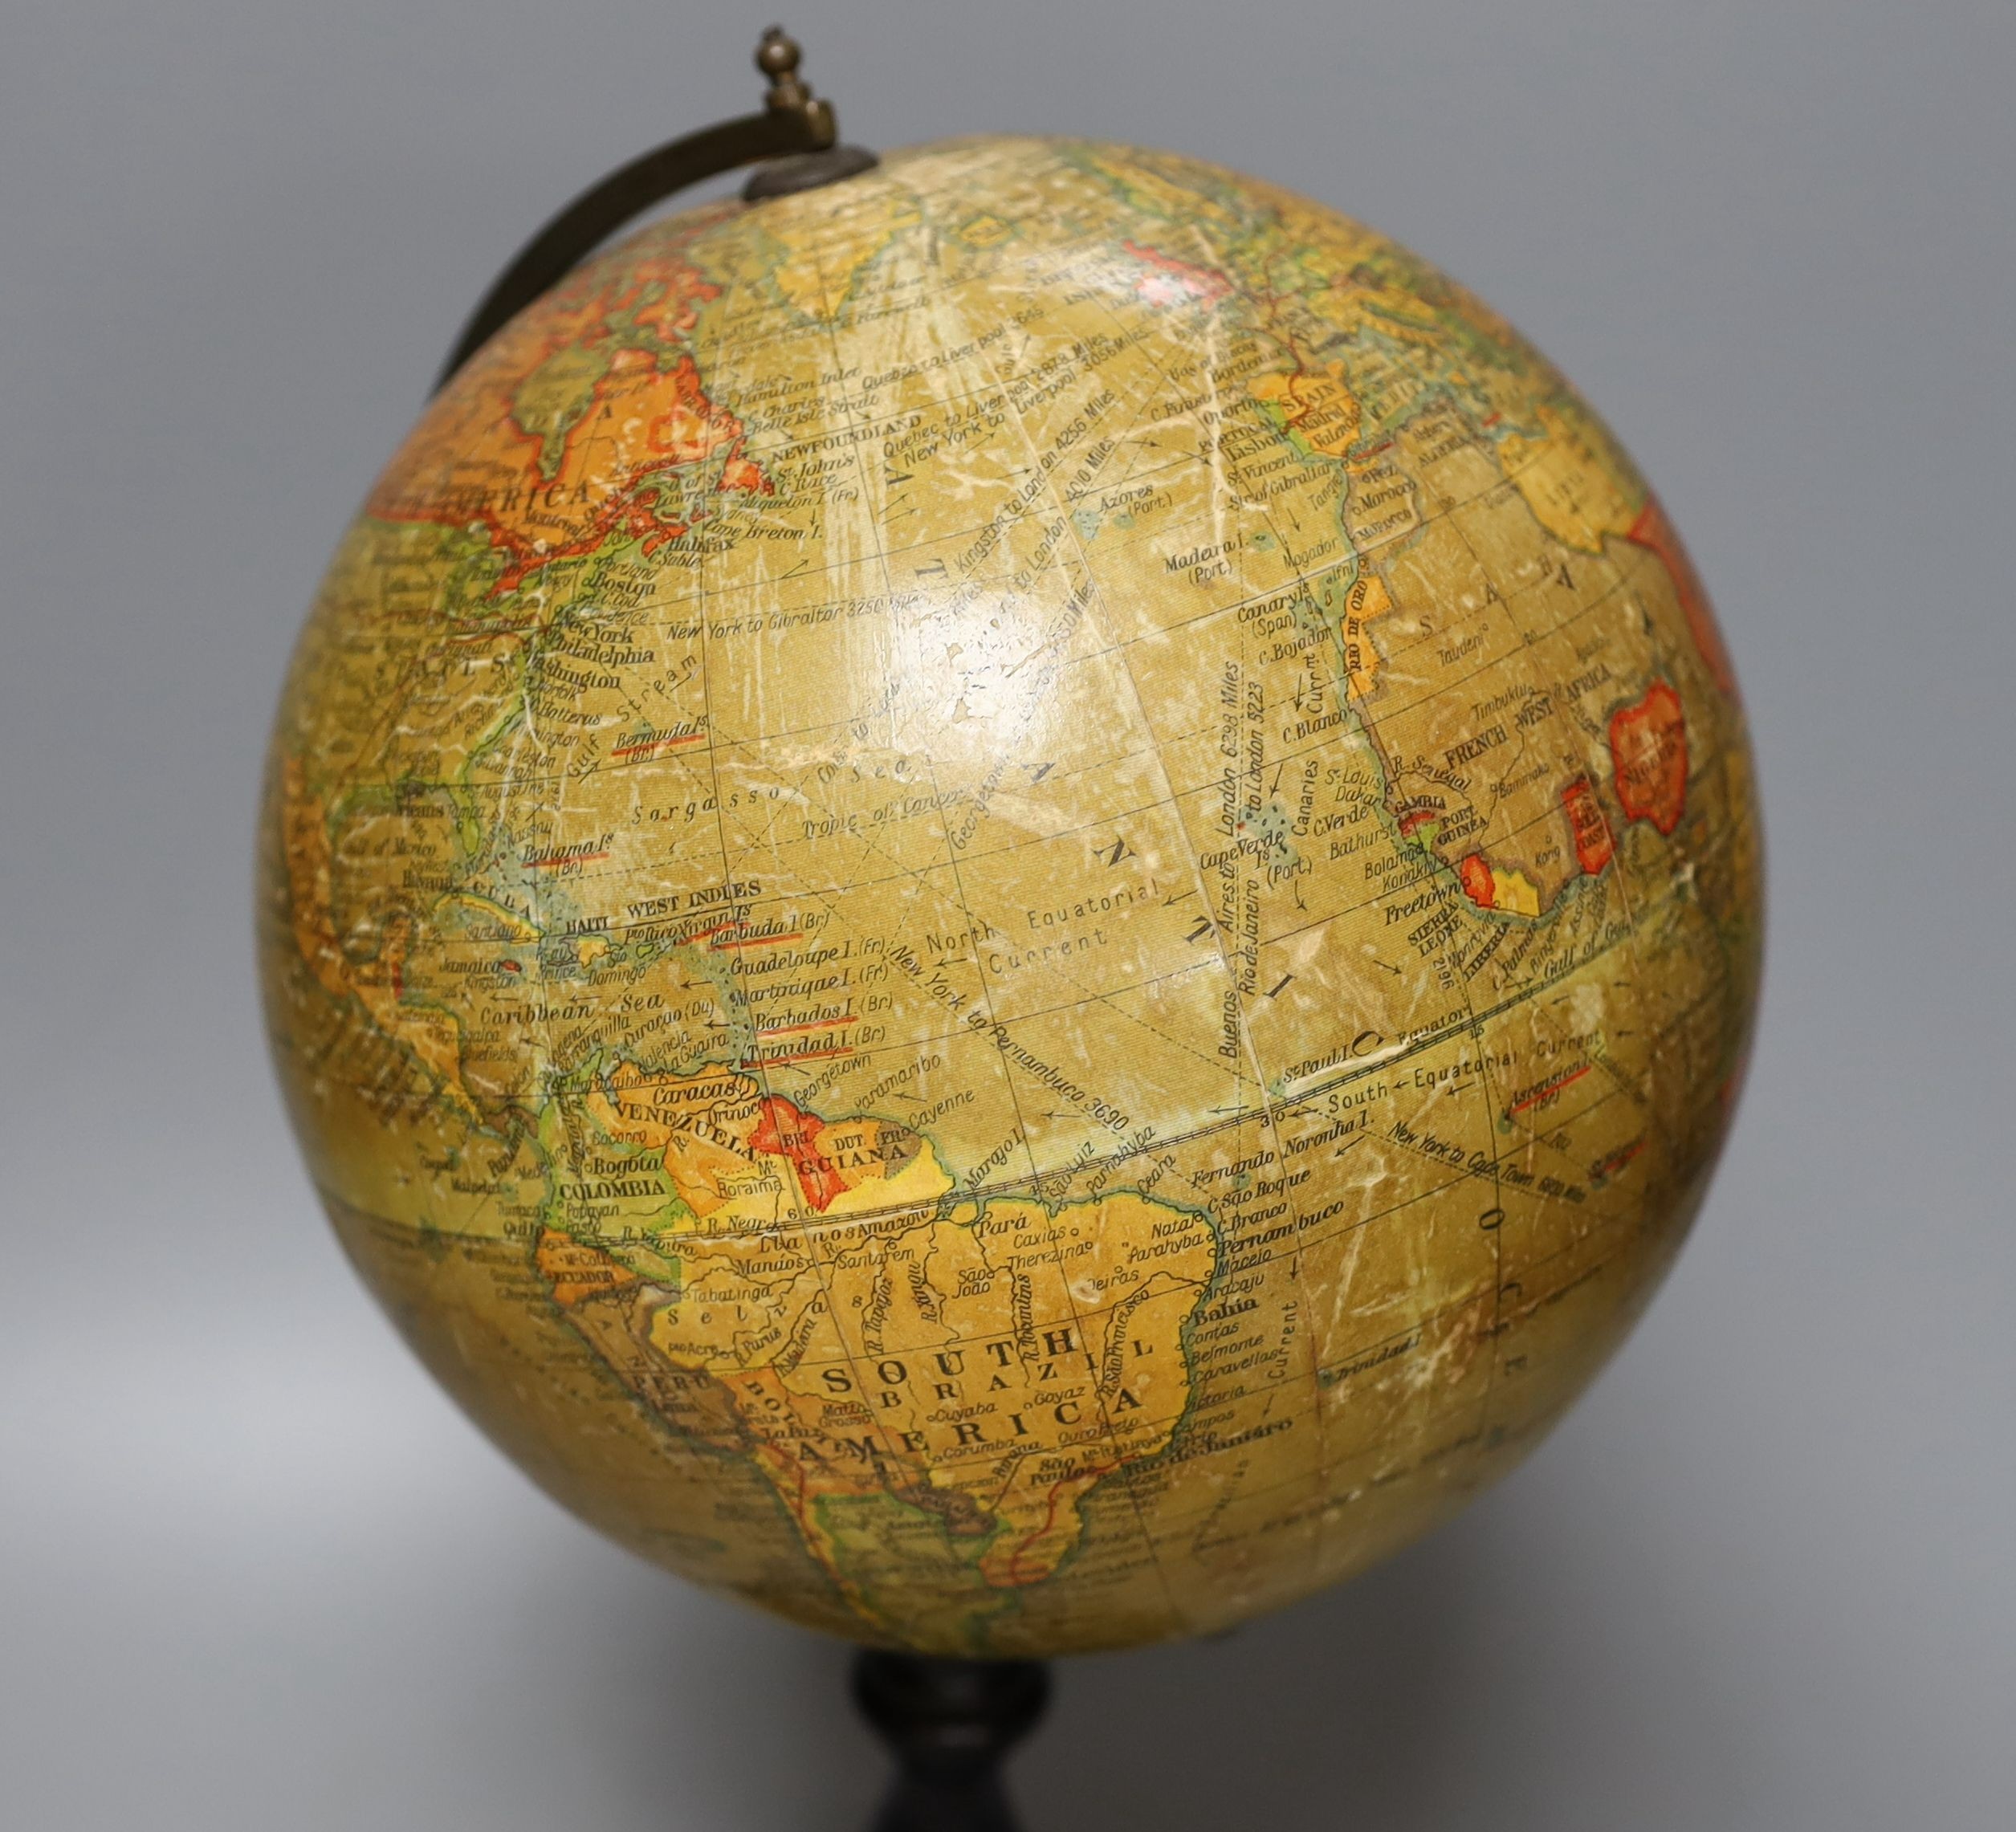 A Geographia 8 inch terrestrial globe, ebonised stand. 37cm tall